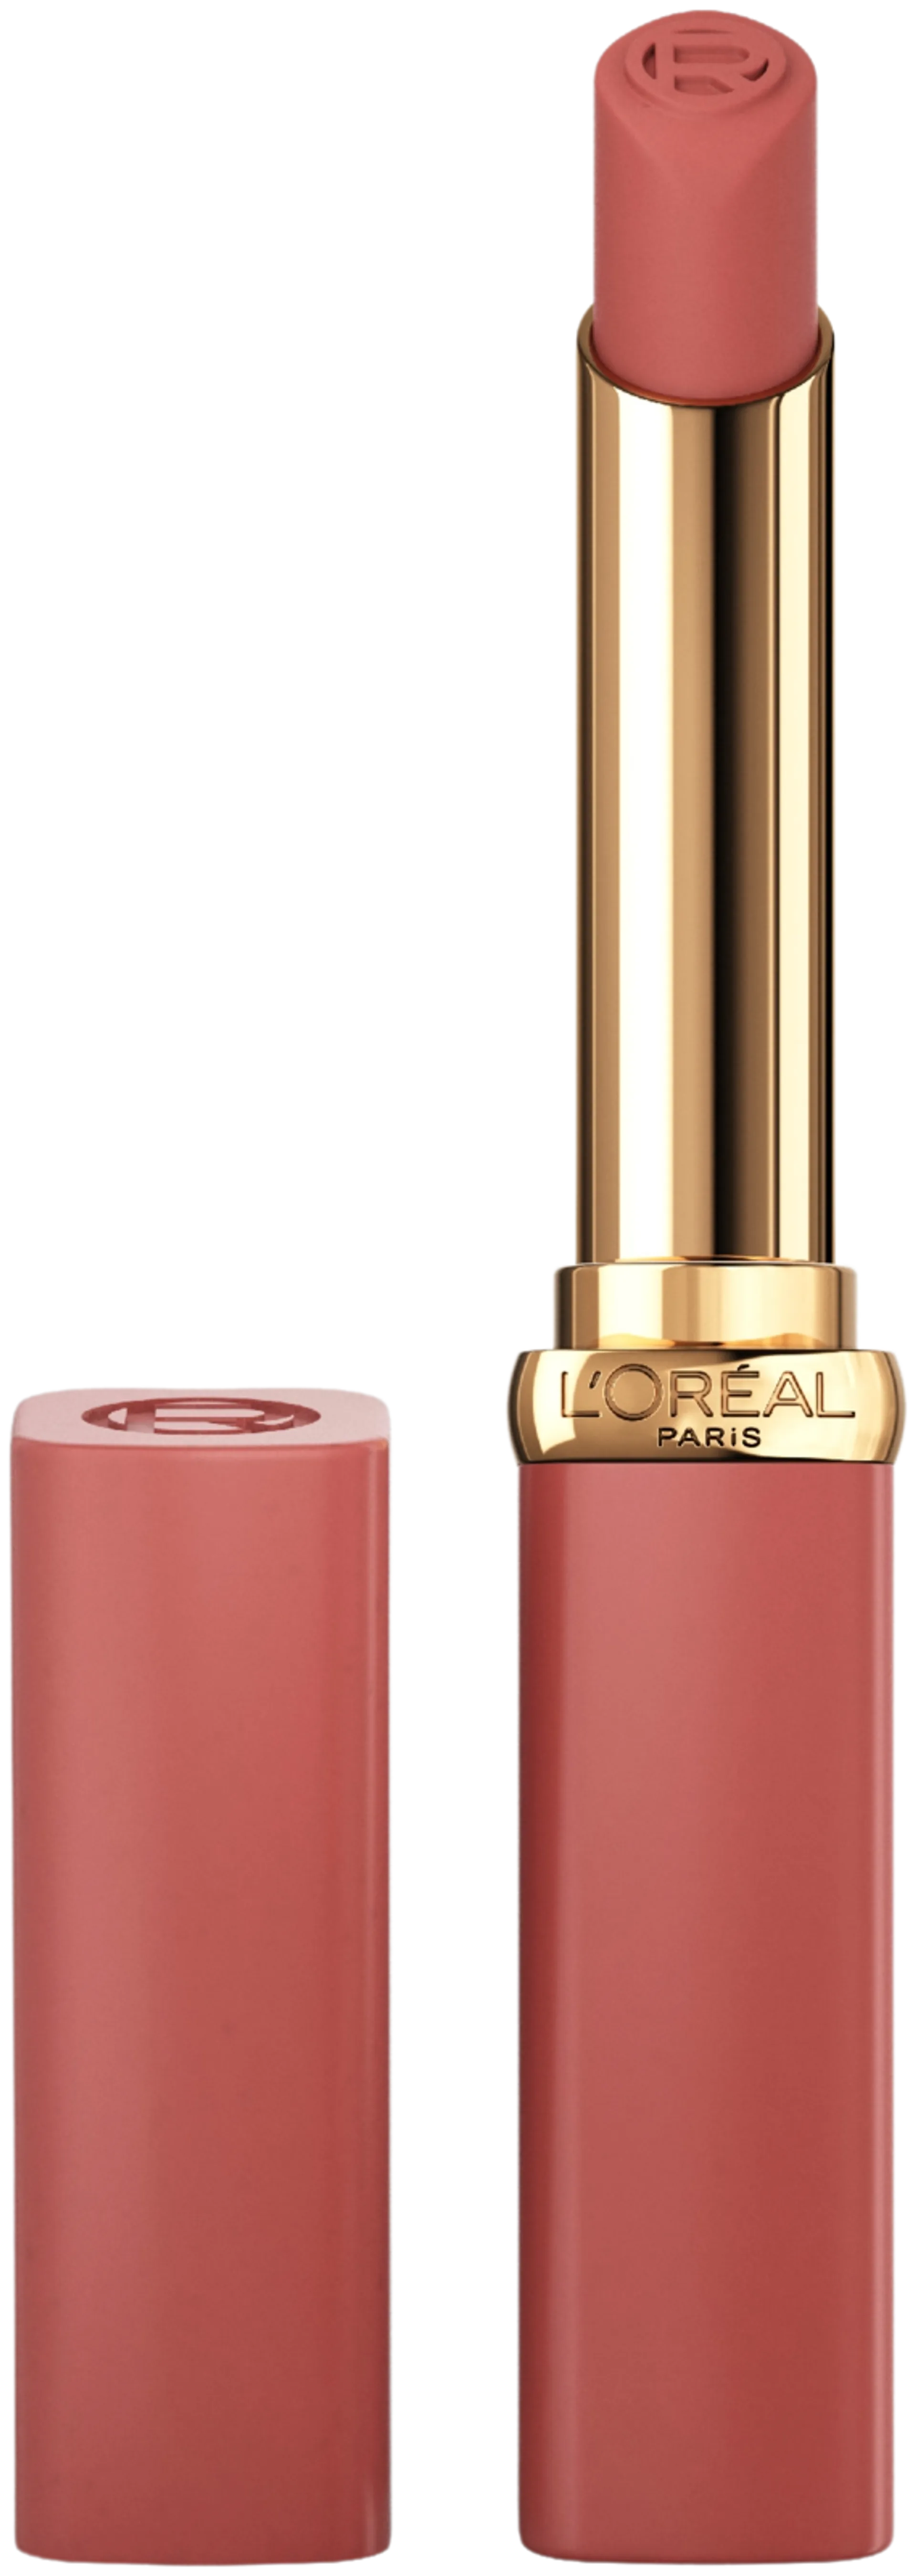 L'Oréal Paris Color Riche 600 NUDE AUDACIOUS LE NUDE AUDACIOUS Huulipuna 1,8g - 600 NUDE AUDACIOUS - 1